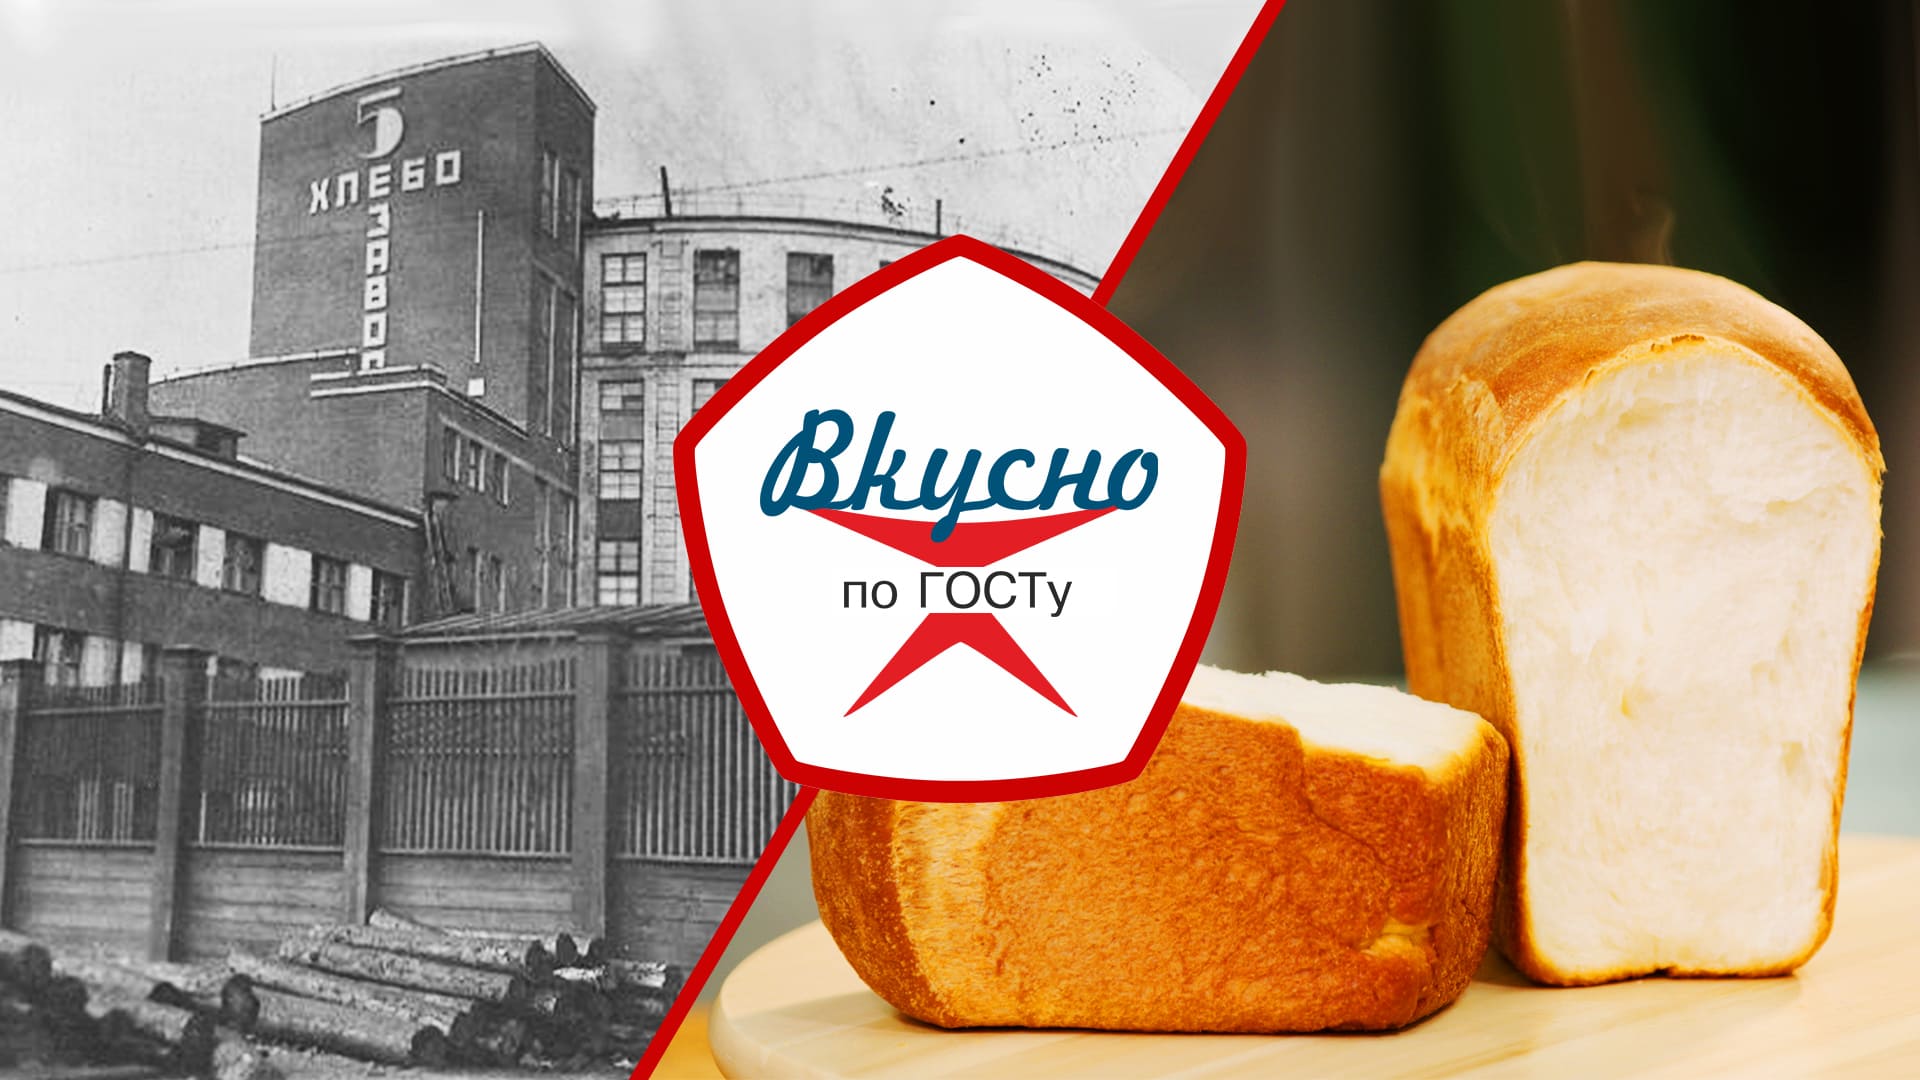 Хлеб – всему голова! Всё о хлебопечении в СССР | Вкусно по ГОСТу